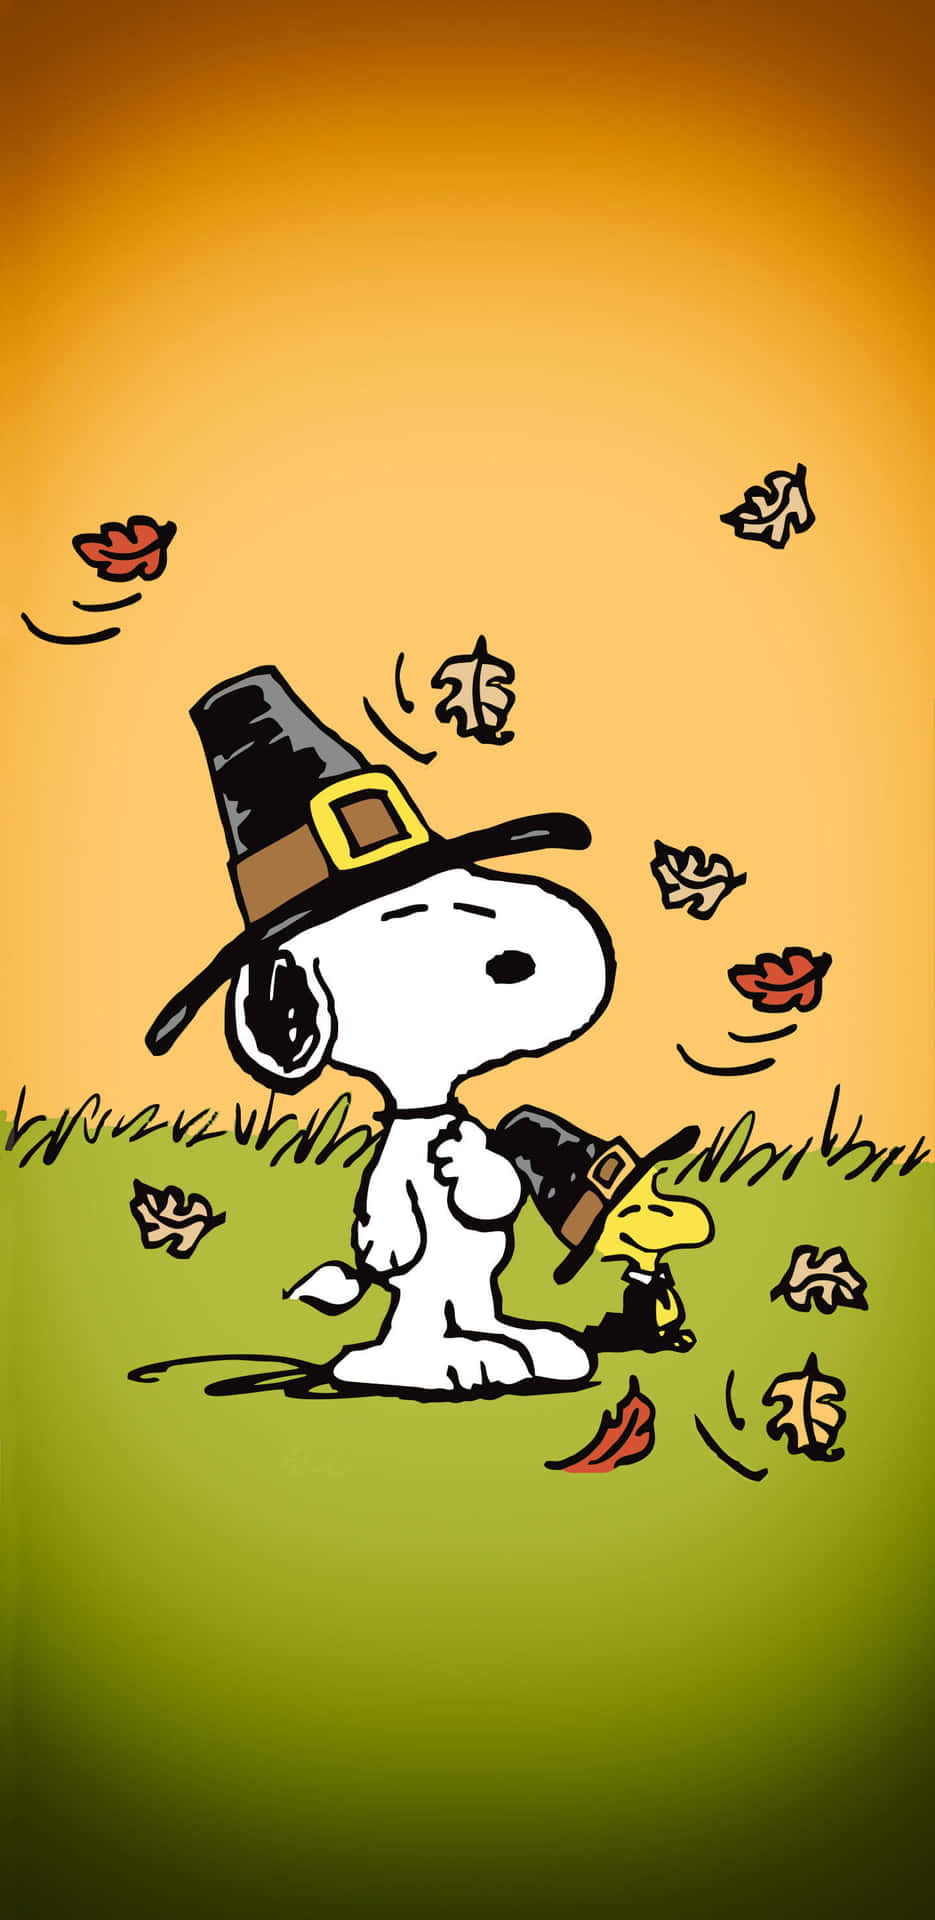 Snoopykommt In Herbststimmung! Wallpaper